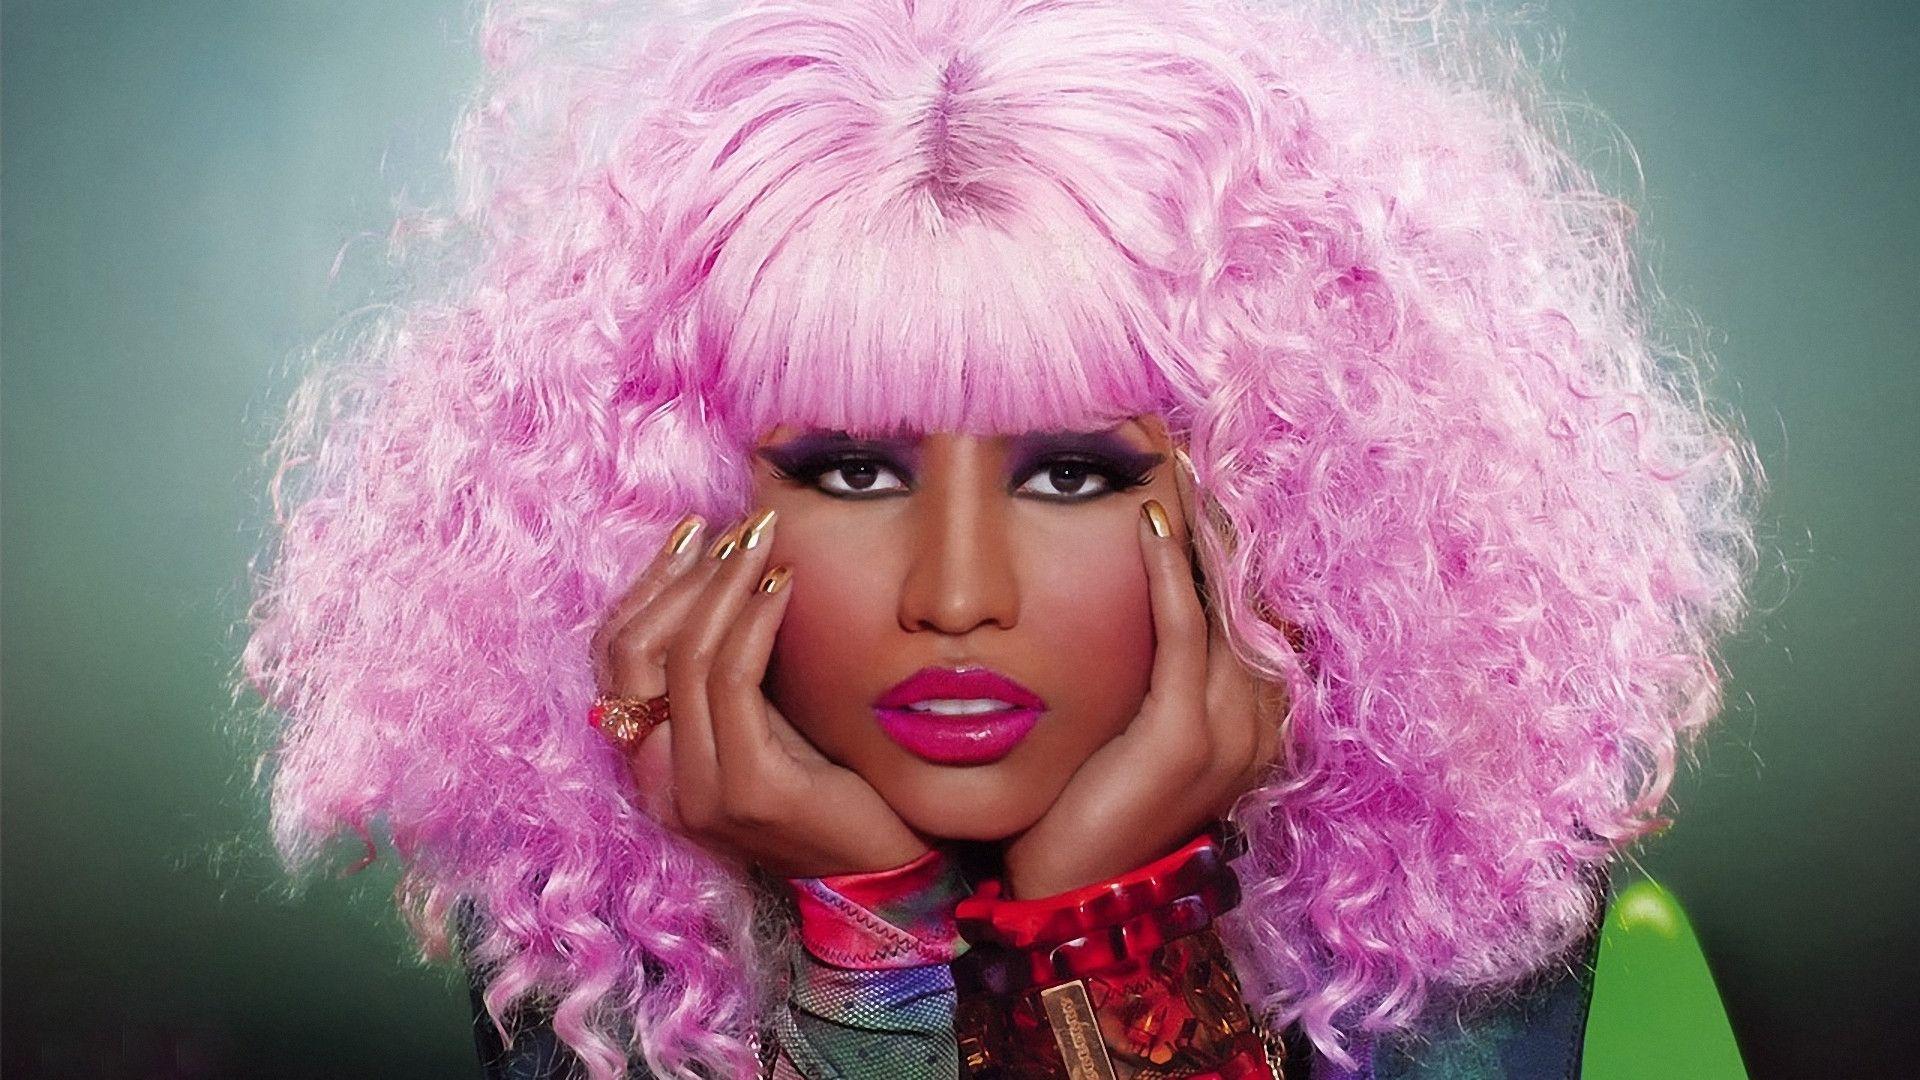 Nicki Minaj Wallpaper. Large HD Wallpaper Database